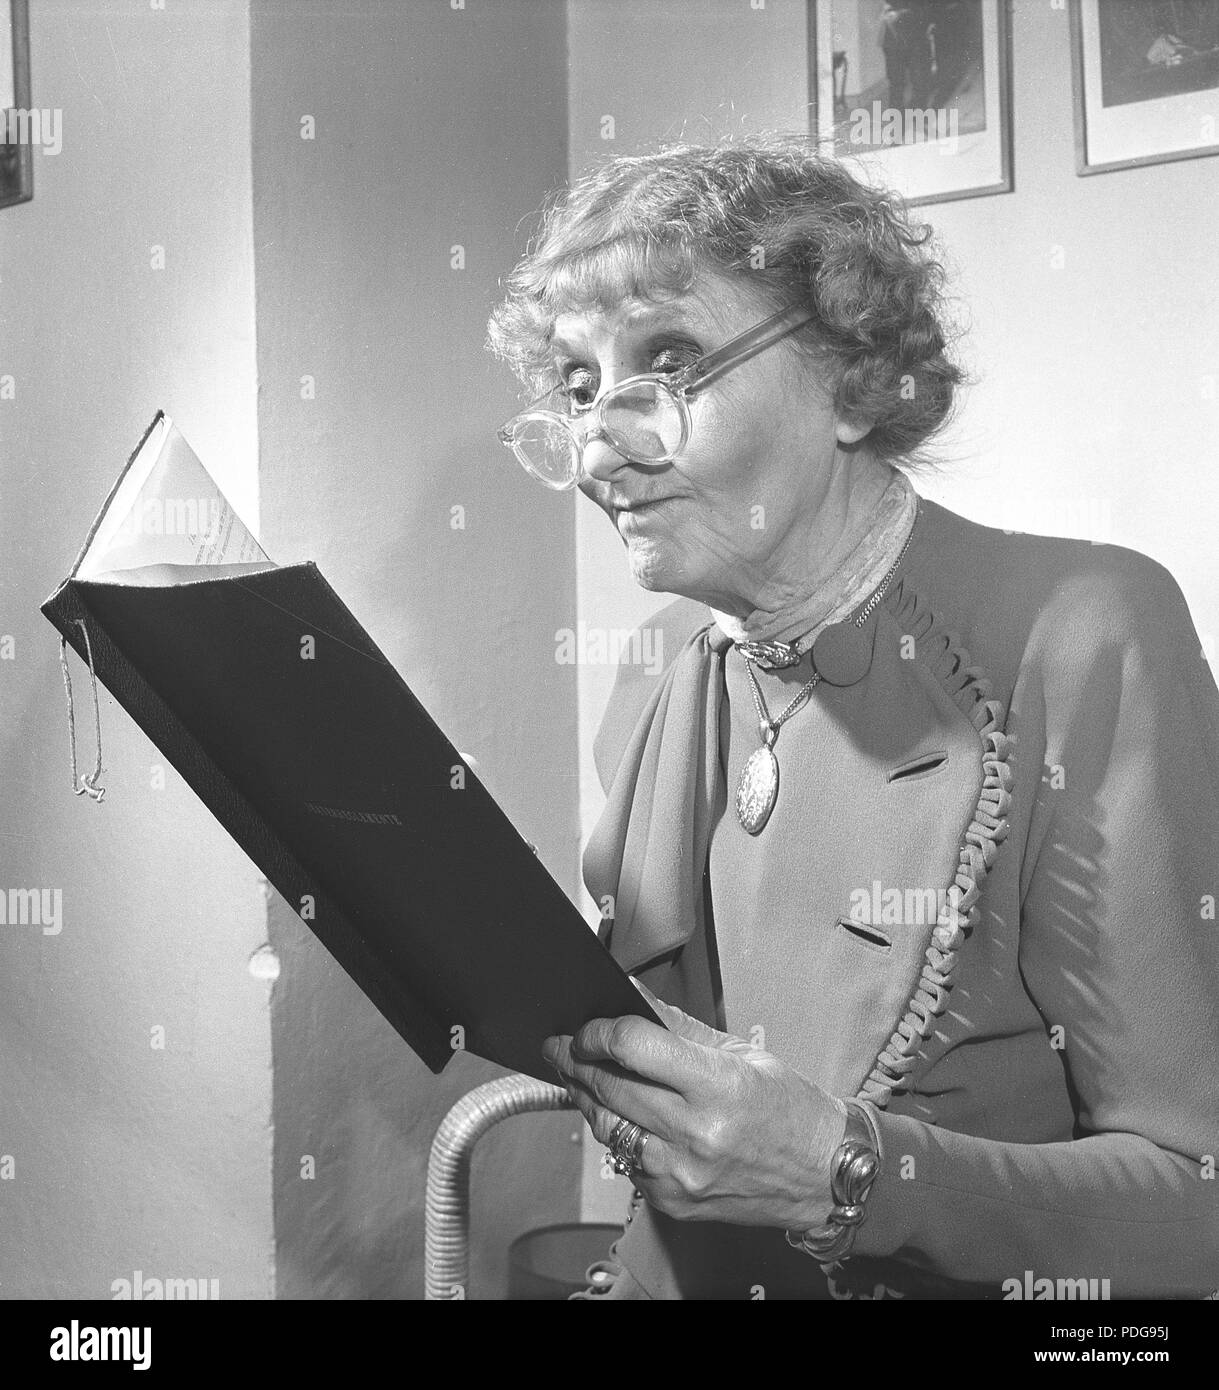 1950s femme avec lunettes. Une dame âgée avec ses lunettes sur le bout de son nez, est en train de lire un document. Suède 1950 photo Kristoffersson/AX40-4 Banque D'Images